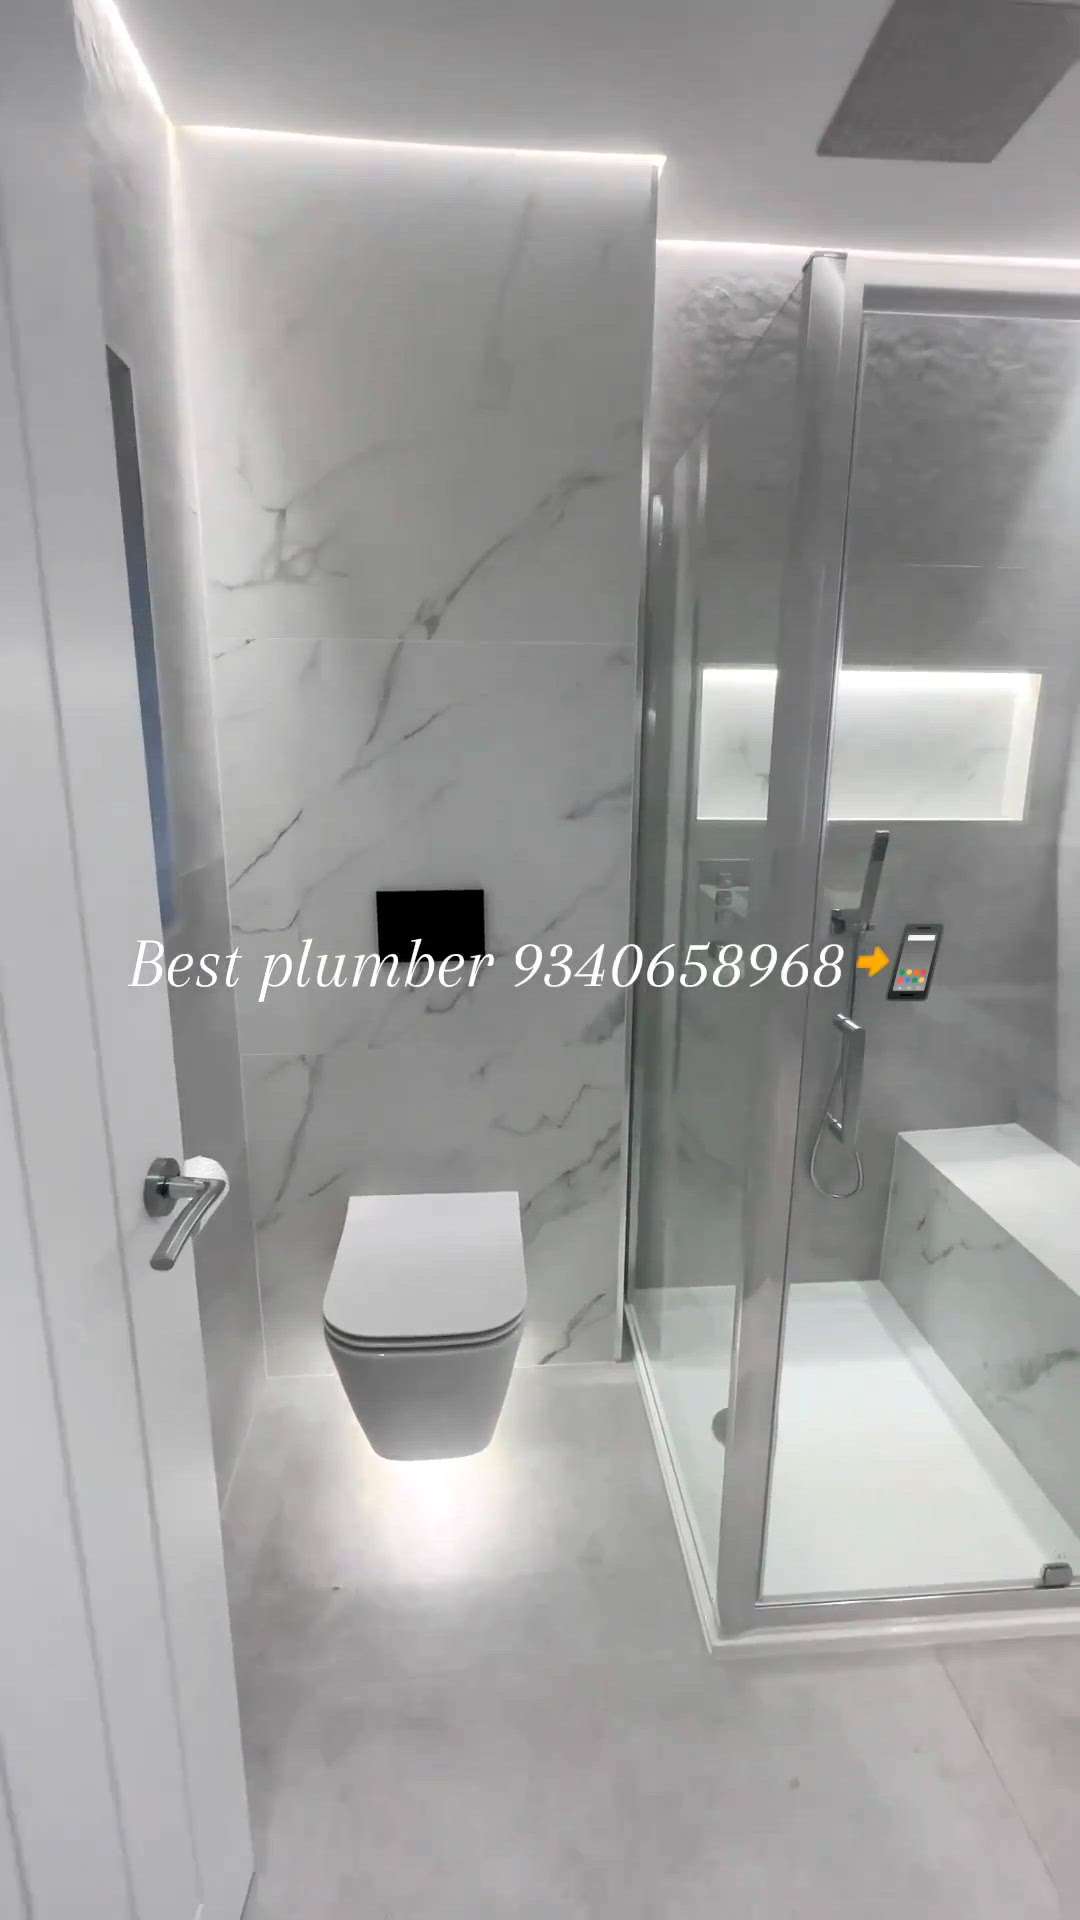 Best plumber 9340658968📲 
 #Plumber #BathroomStorage #BathroomDesigns #BathroomFittings